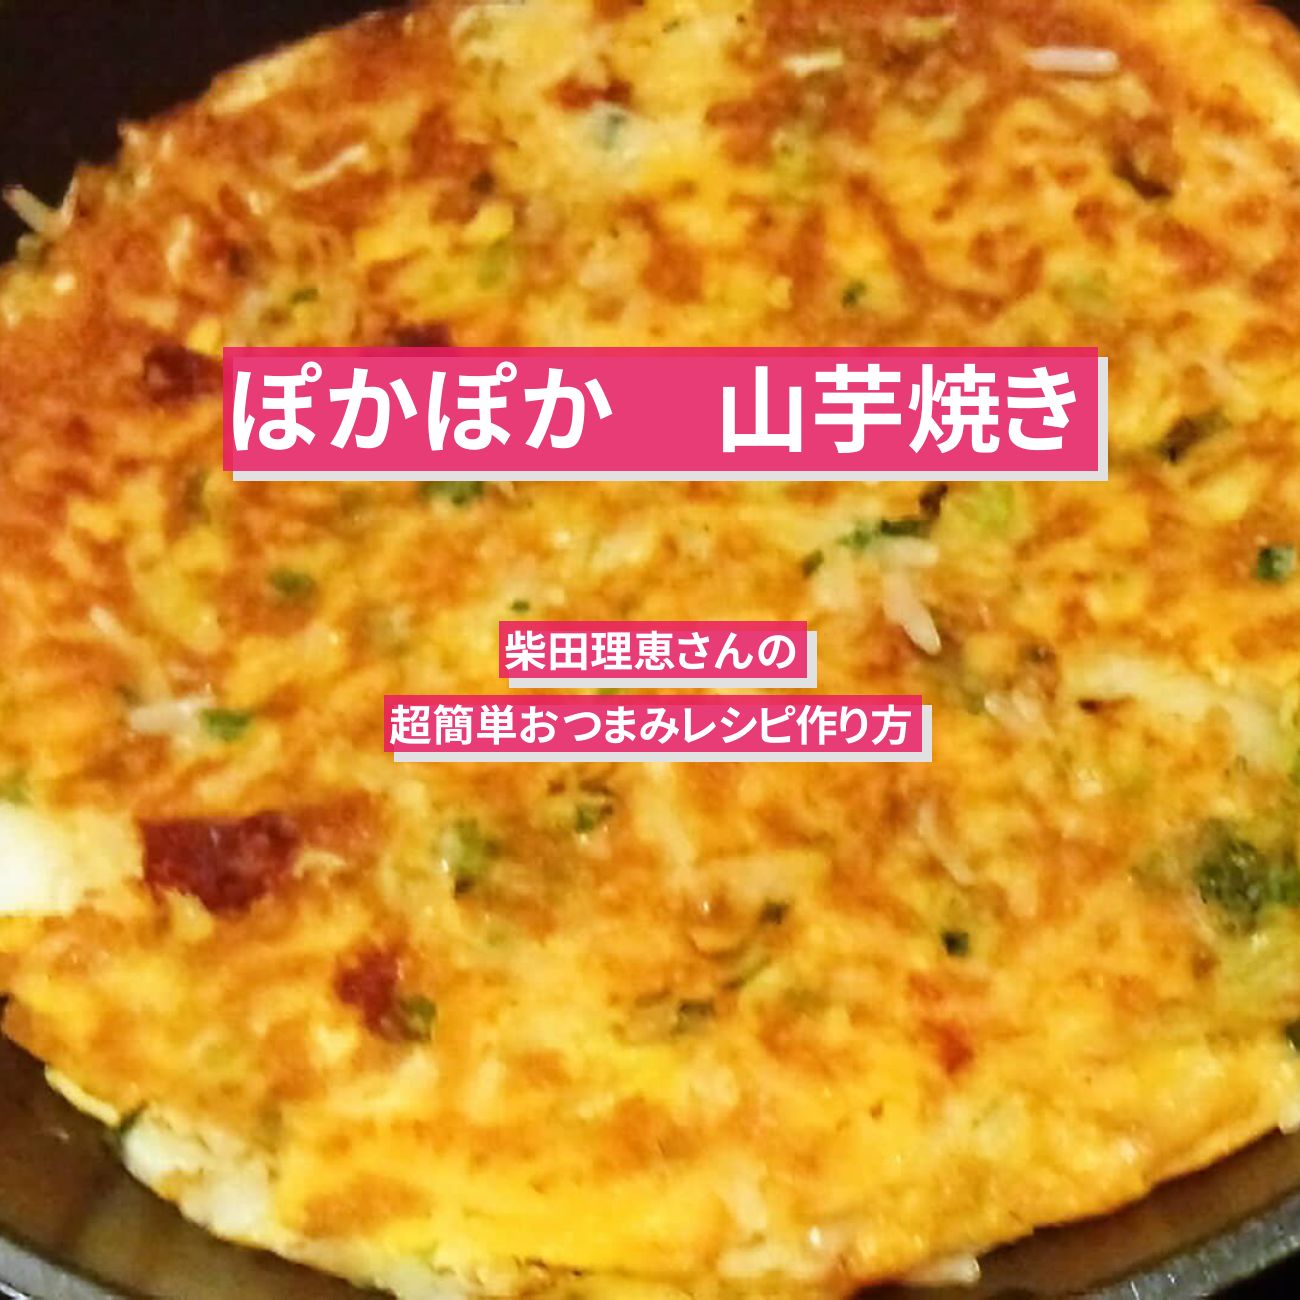 【ぽかぽか】『山芋焼き』柴田理恵さんの超簡単おつまみレシピ作り方